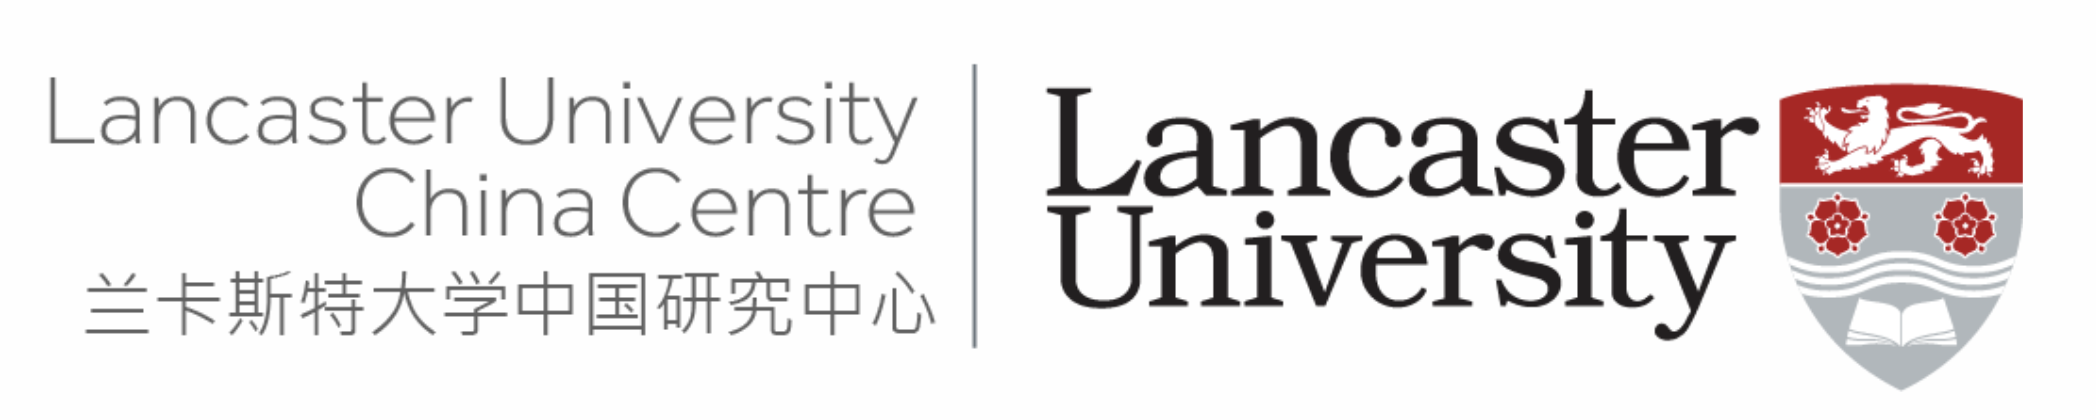 LUCC logo